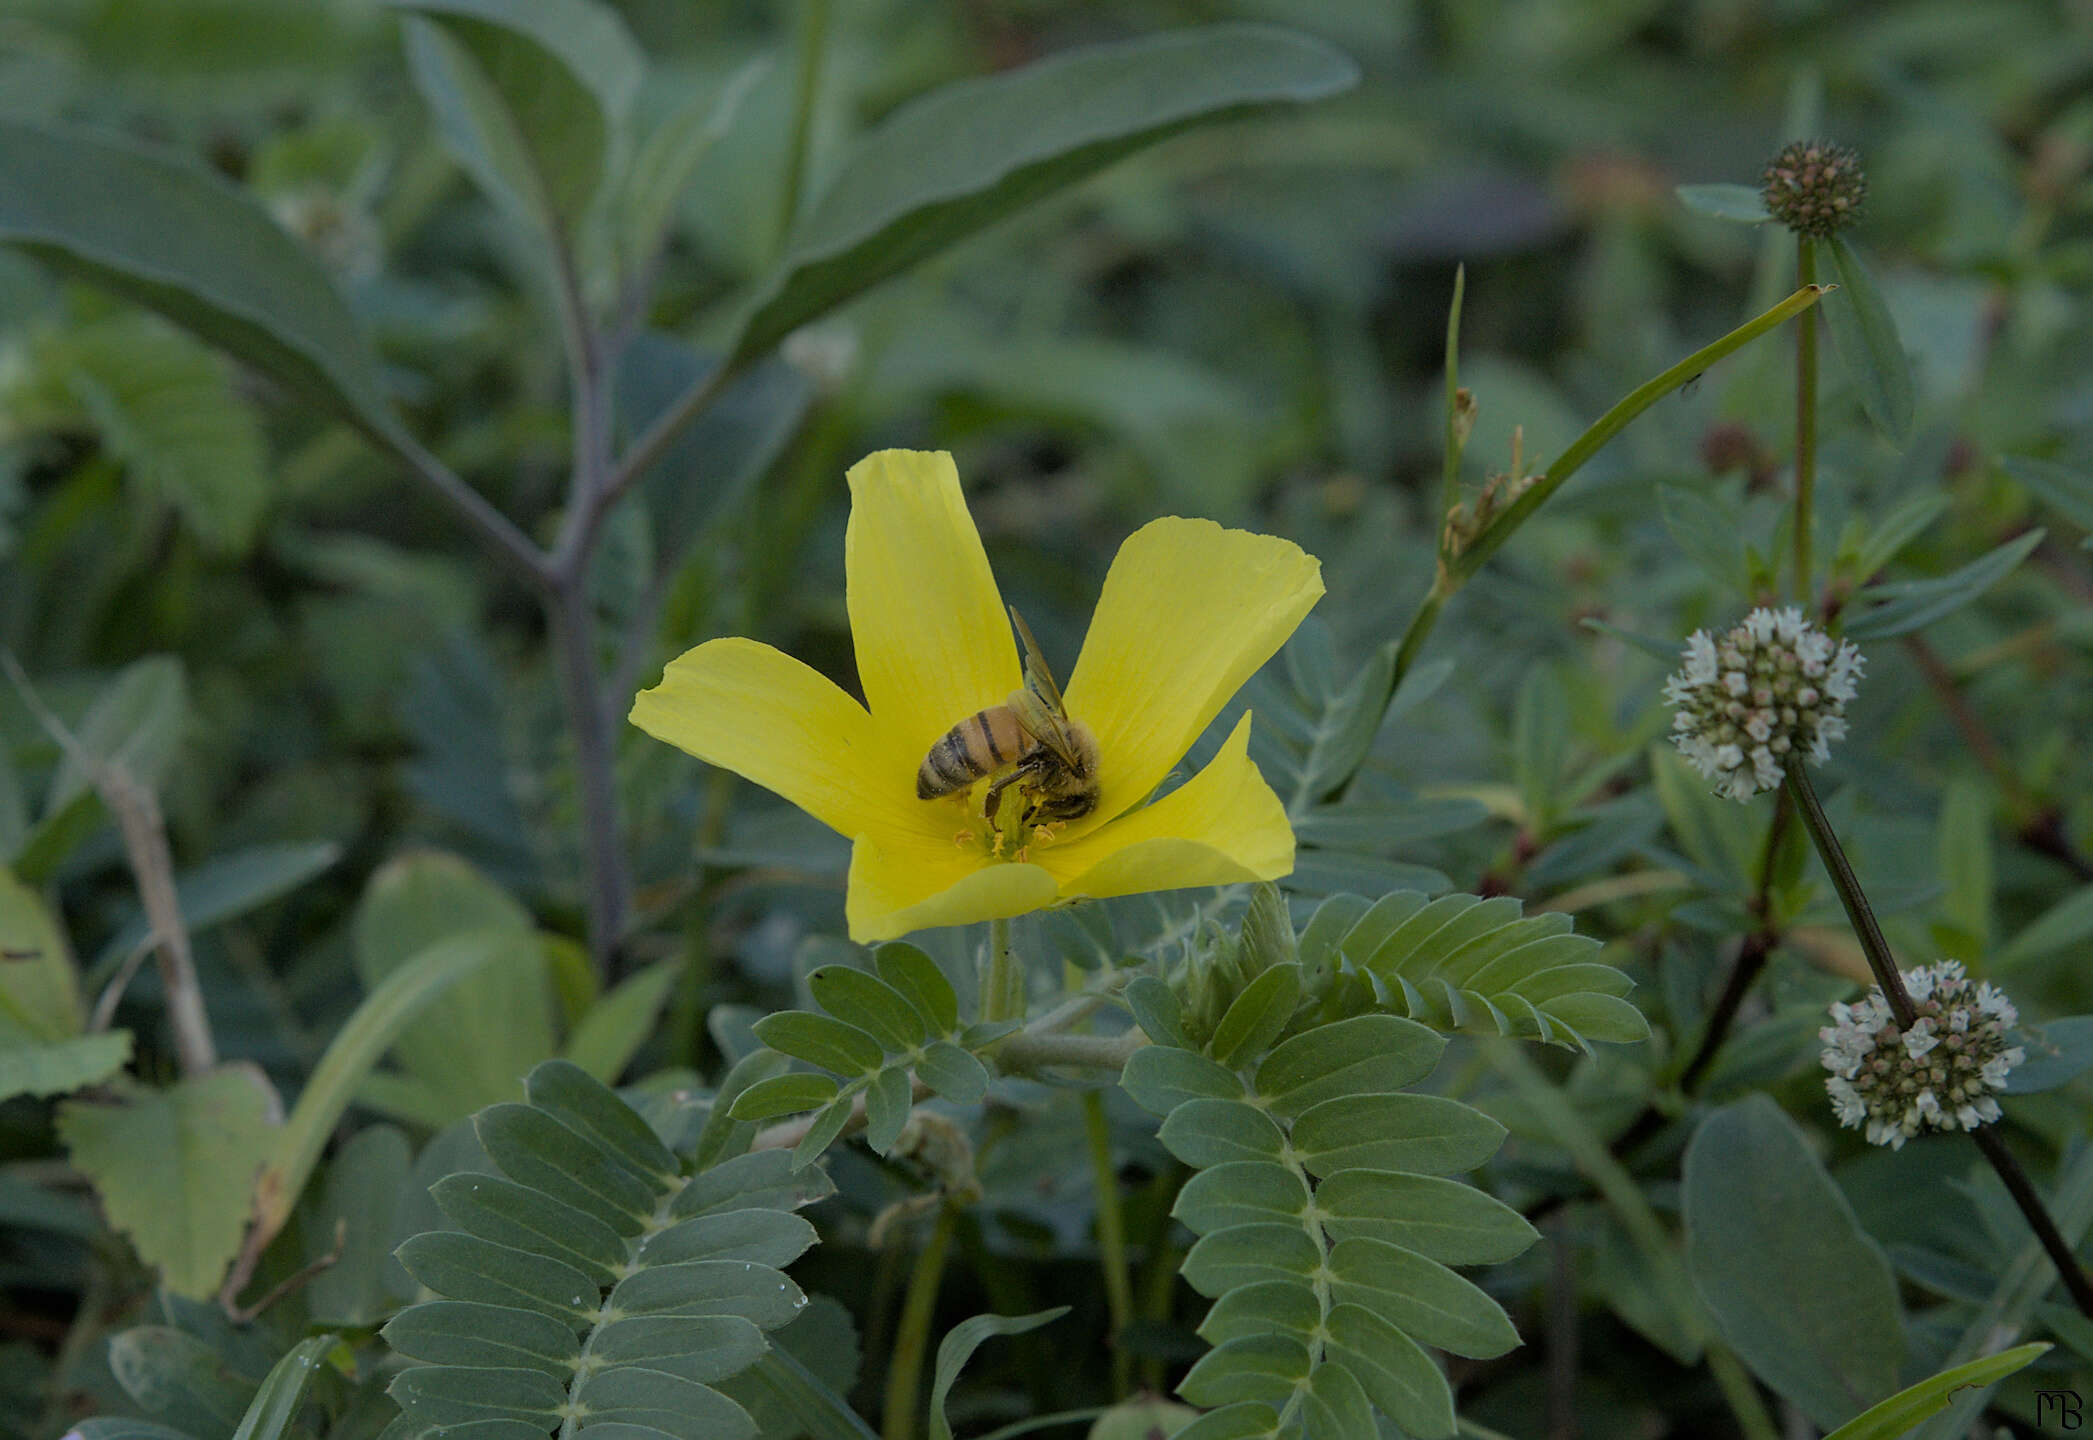 Little bee on yellow daisy